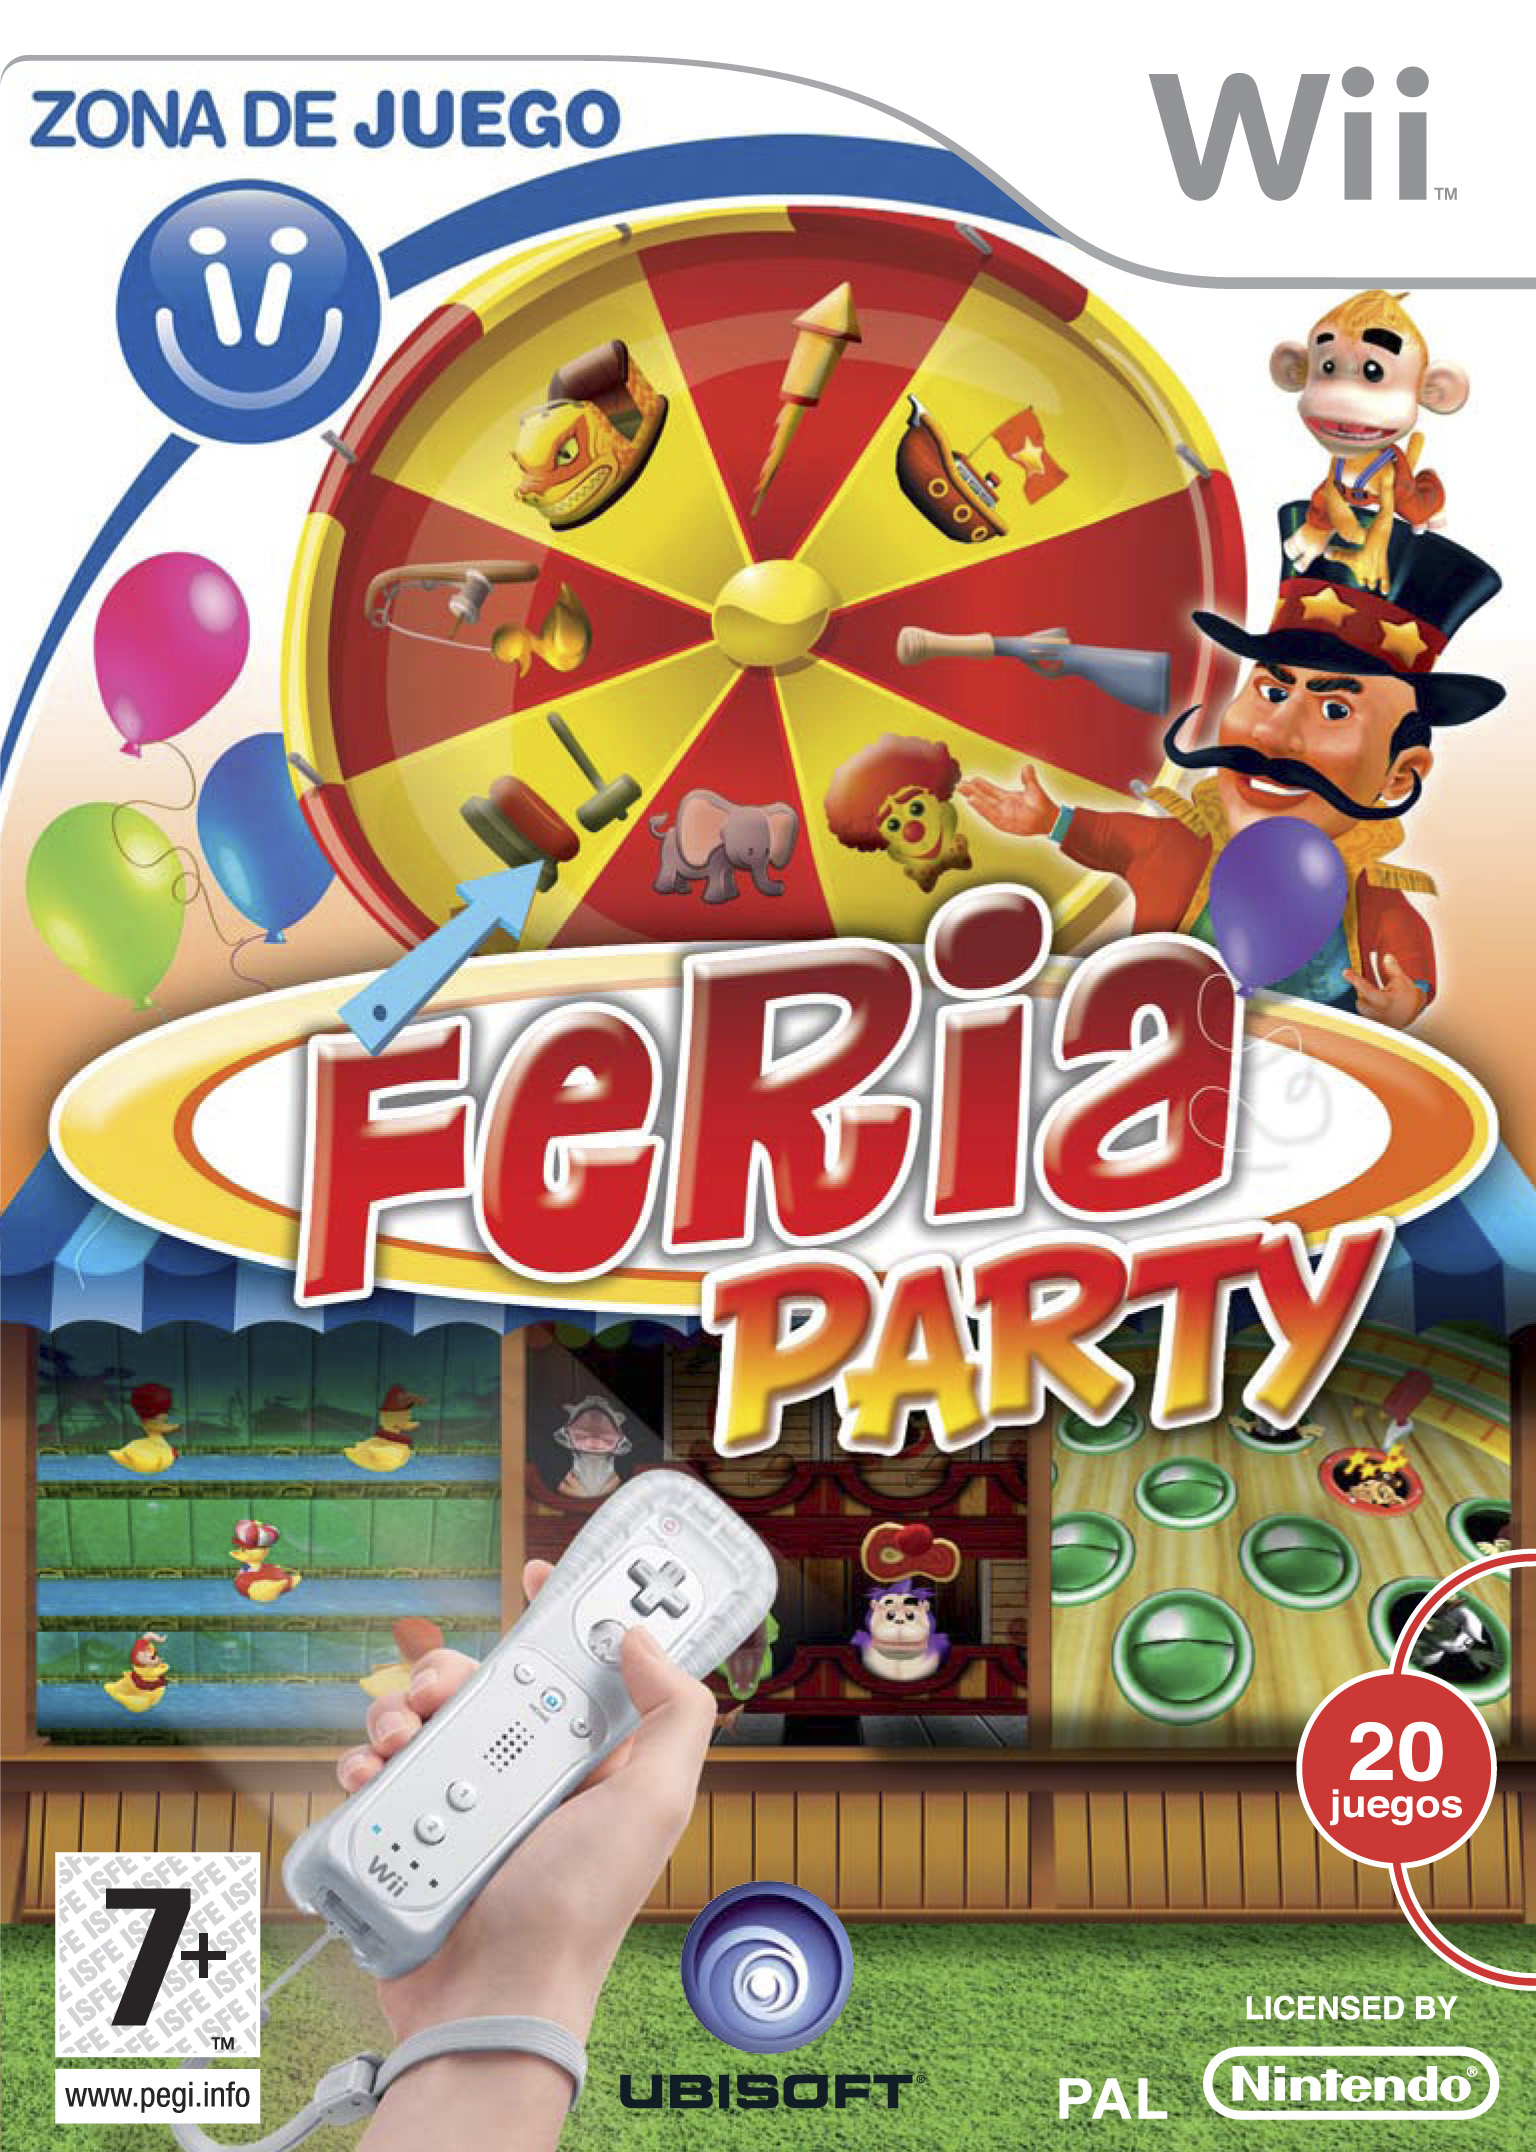 Caratula de Zona de Juego: Feria Party para Wii